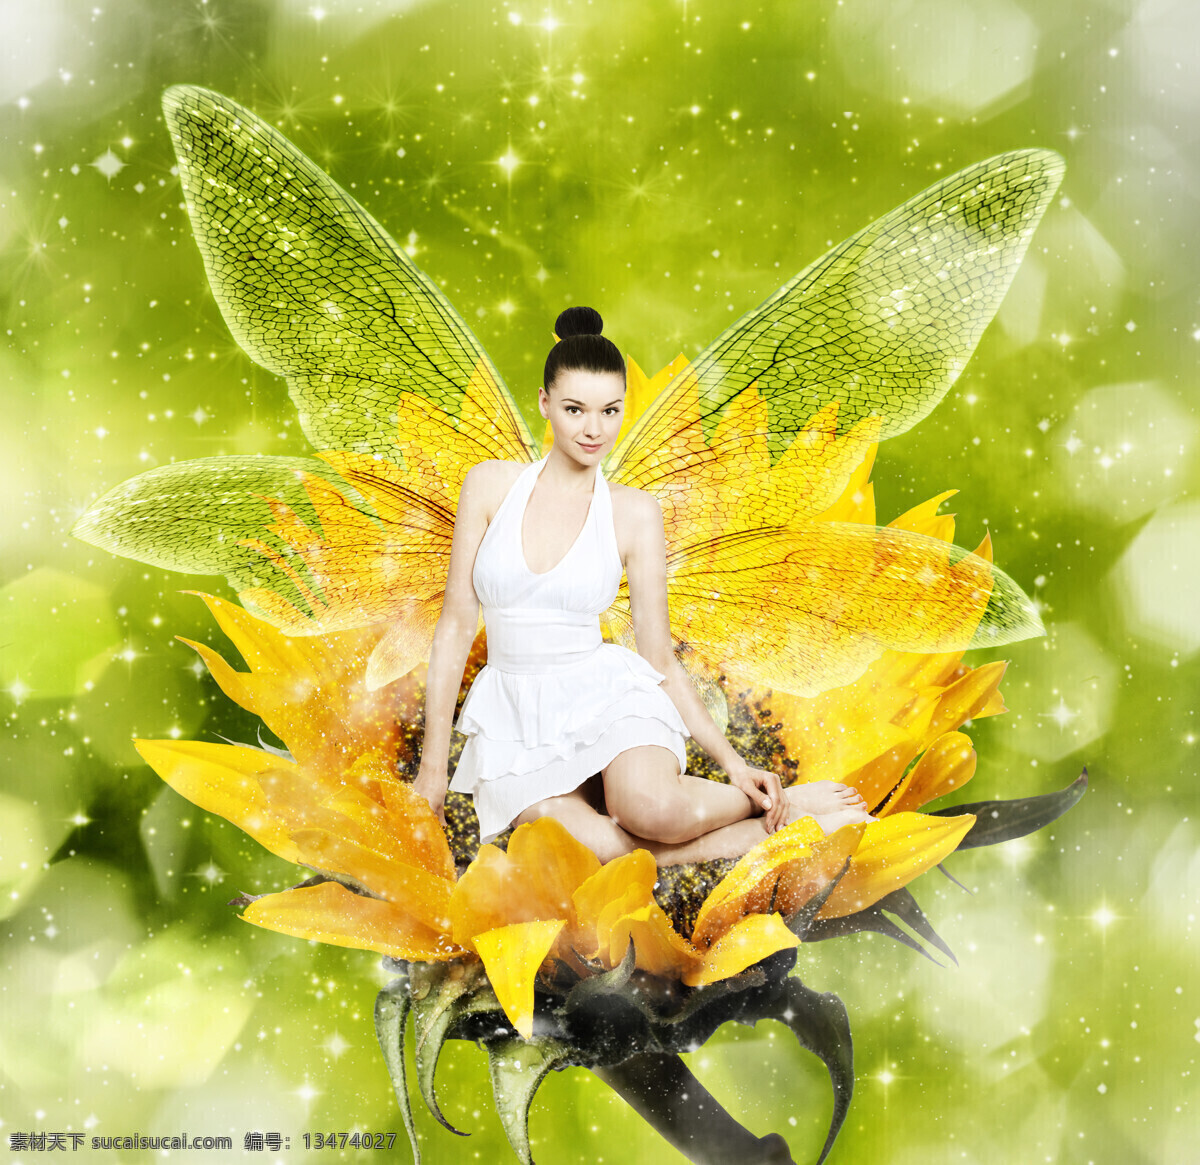 黄色 花朵 上 精灵 绿色 天使 美女图片 人物图片